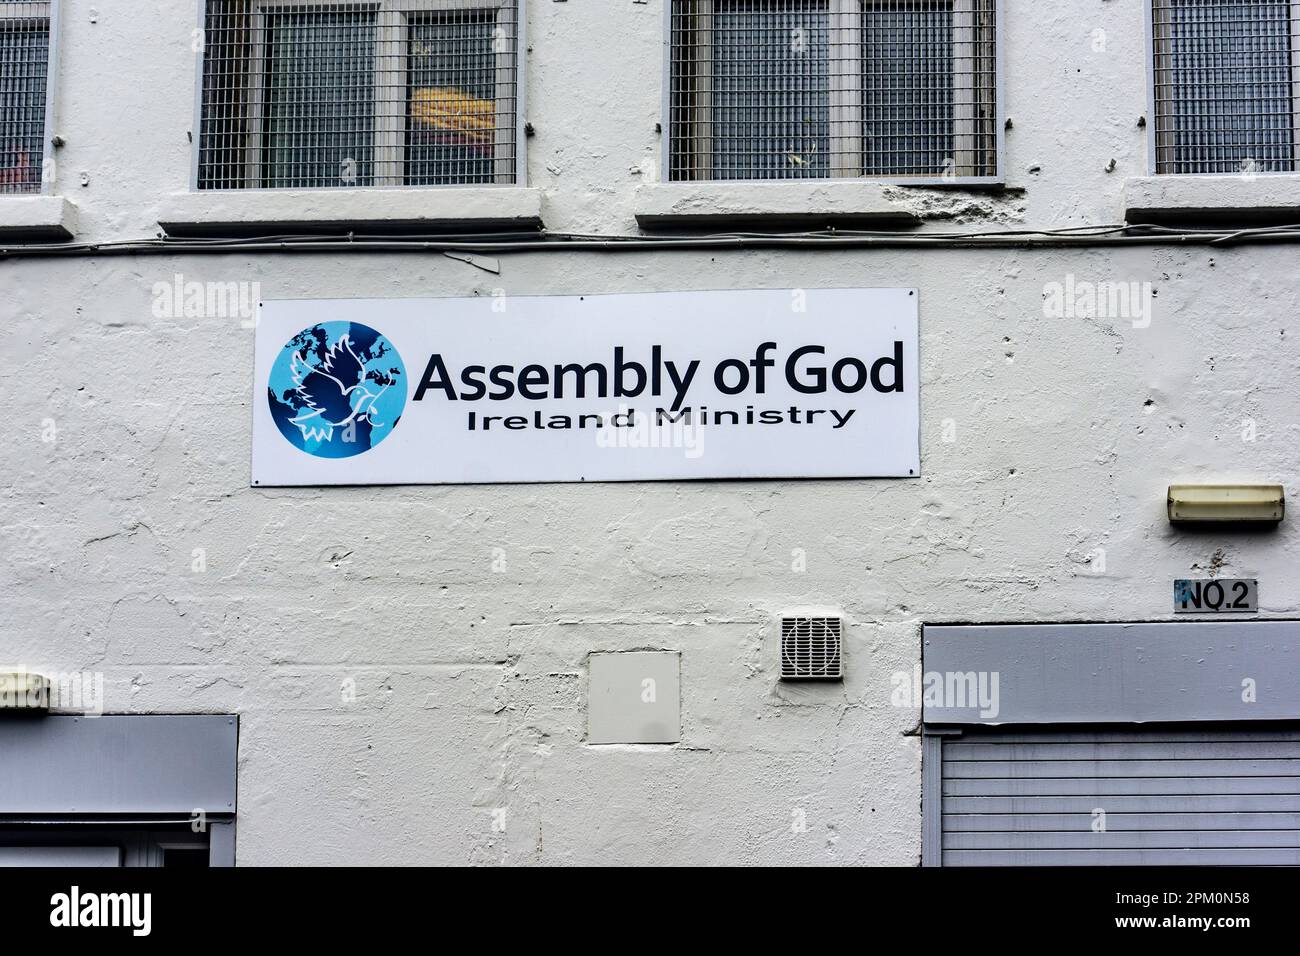 Beschilderung für die Versammlung Gottes, Ministerium Madureira, Rutland Place, Dublin, Irland. Stockfoto